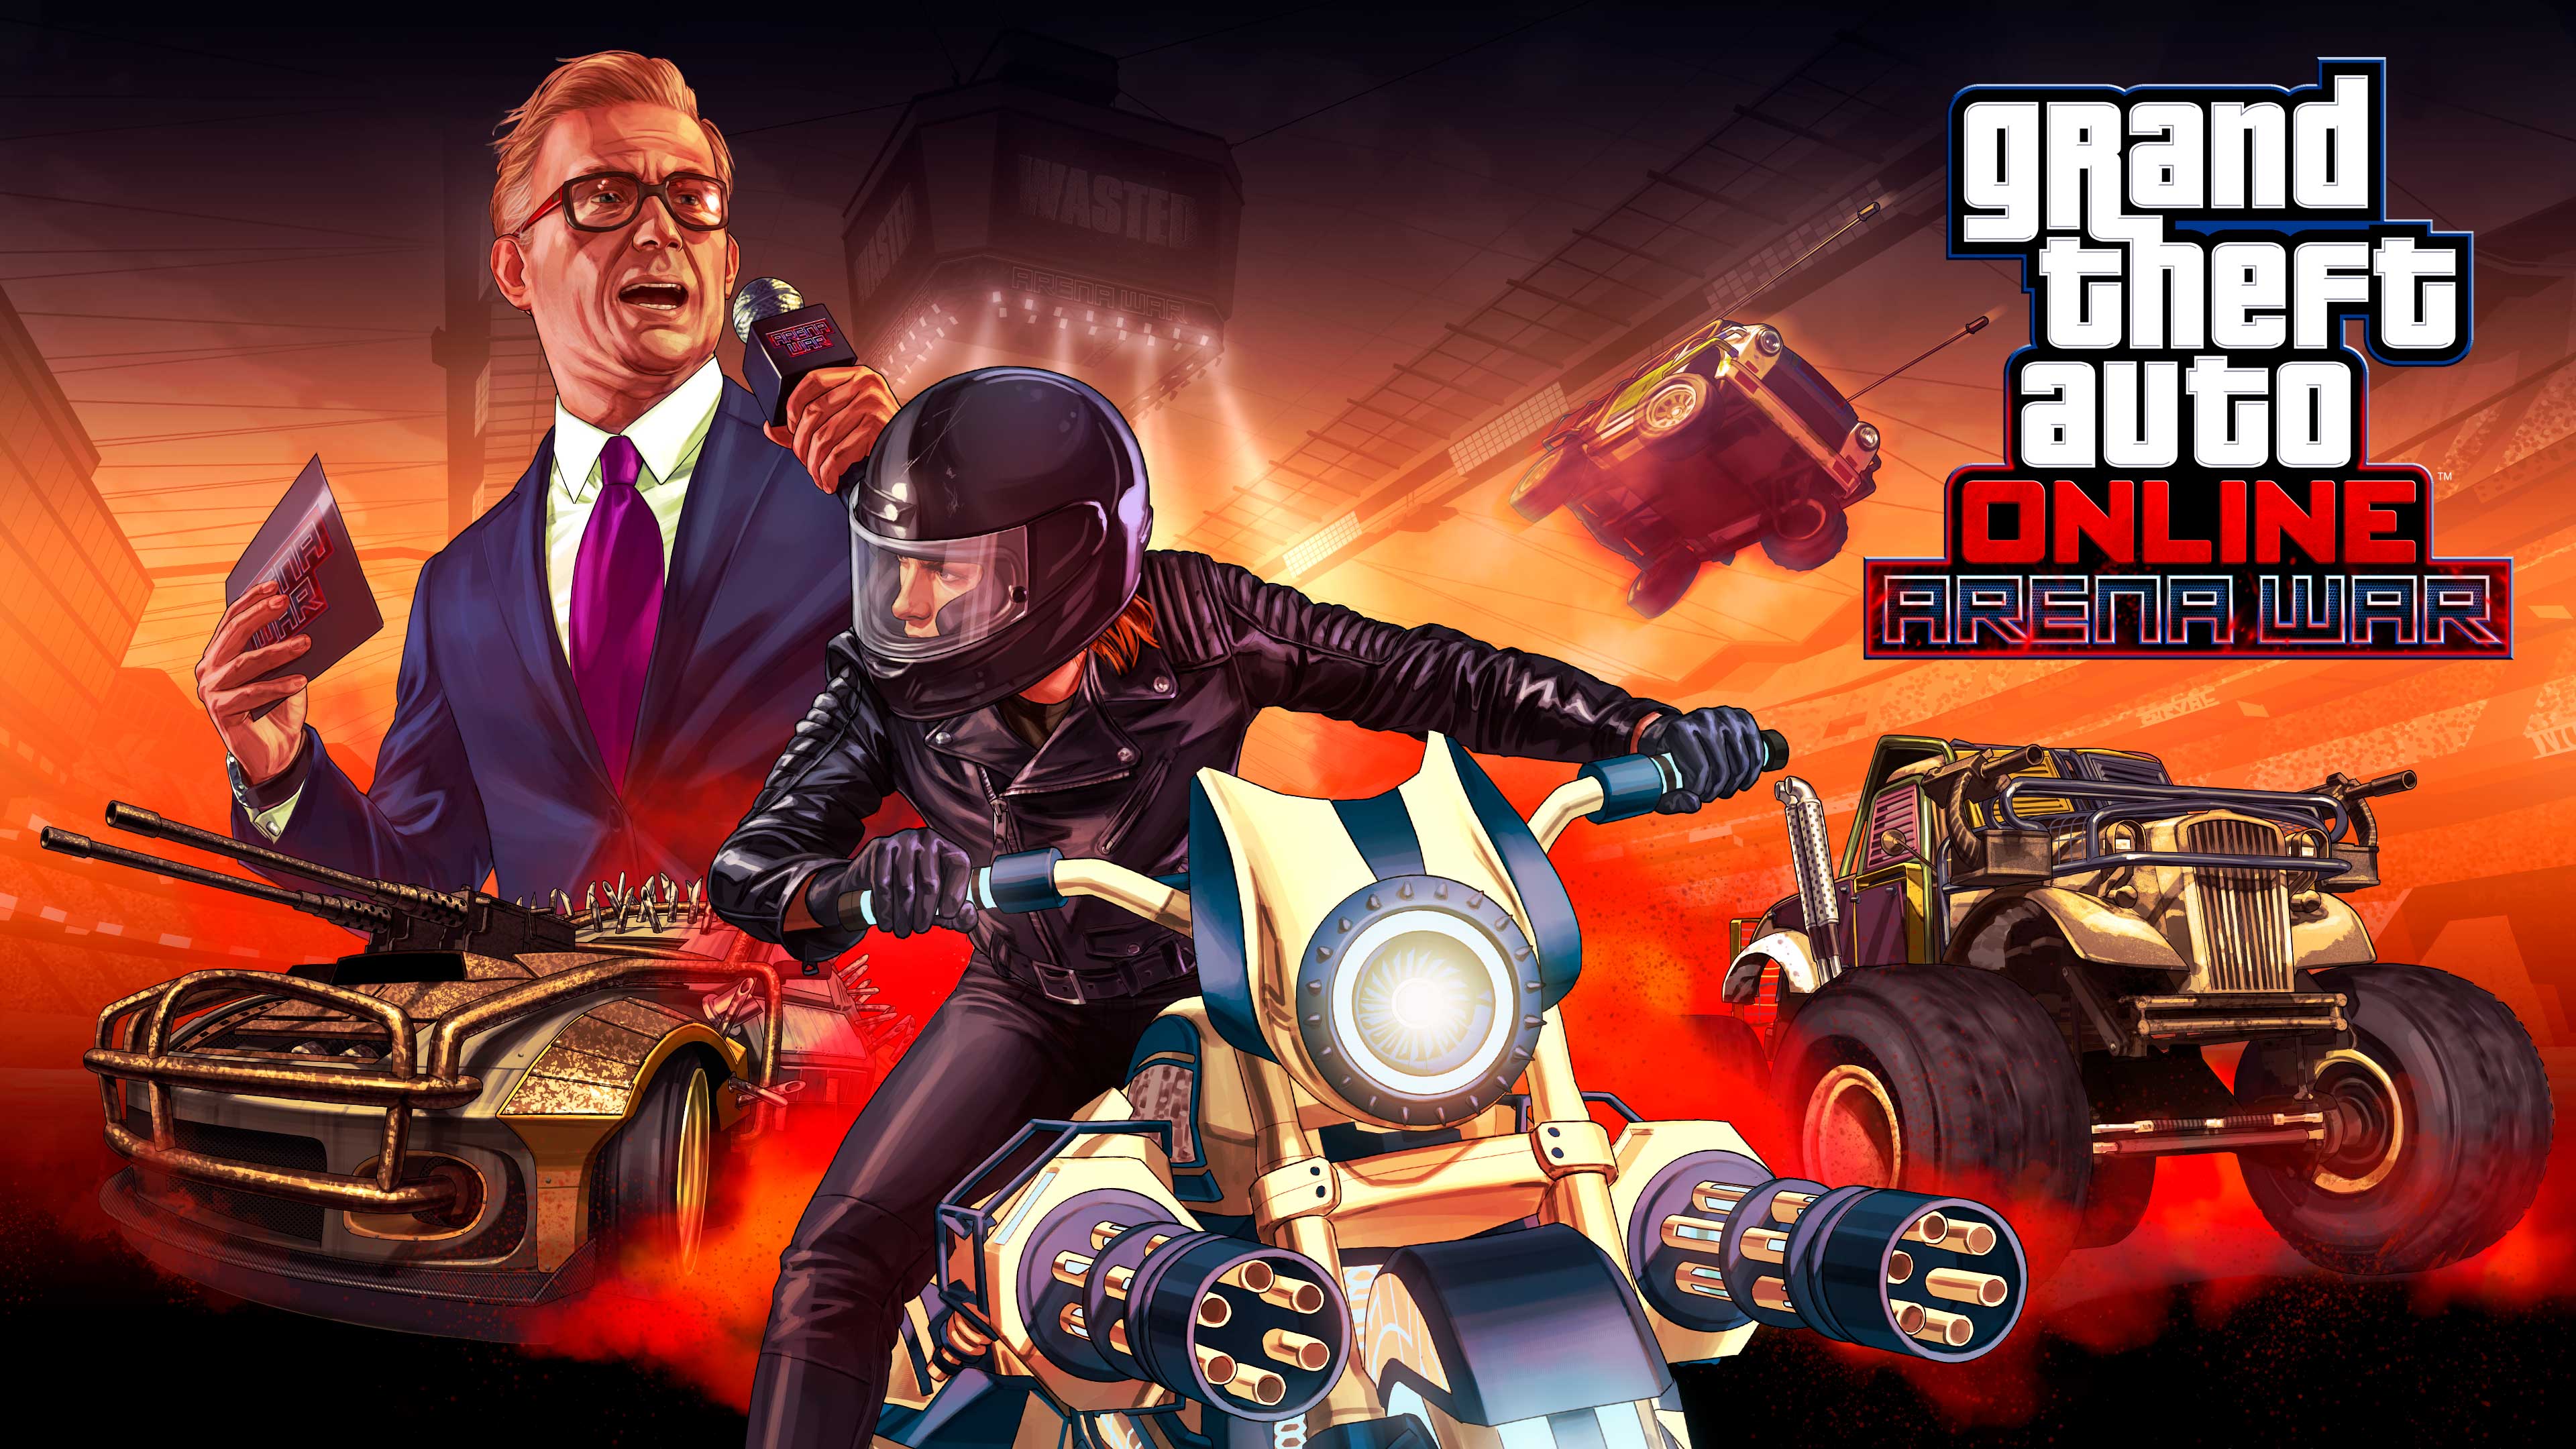 Arte e logo de Arena de Guerra do GTA Online